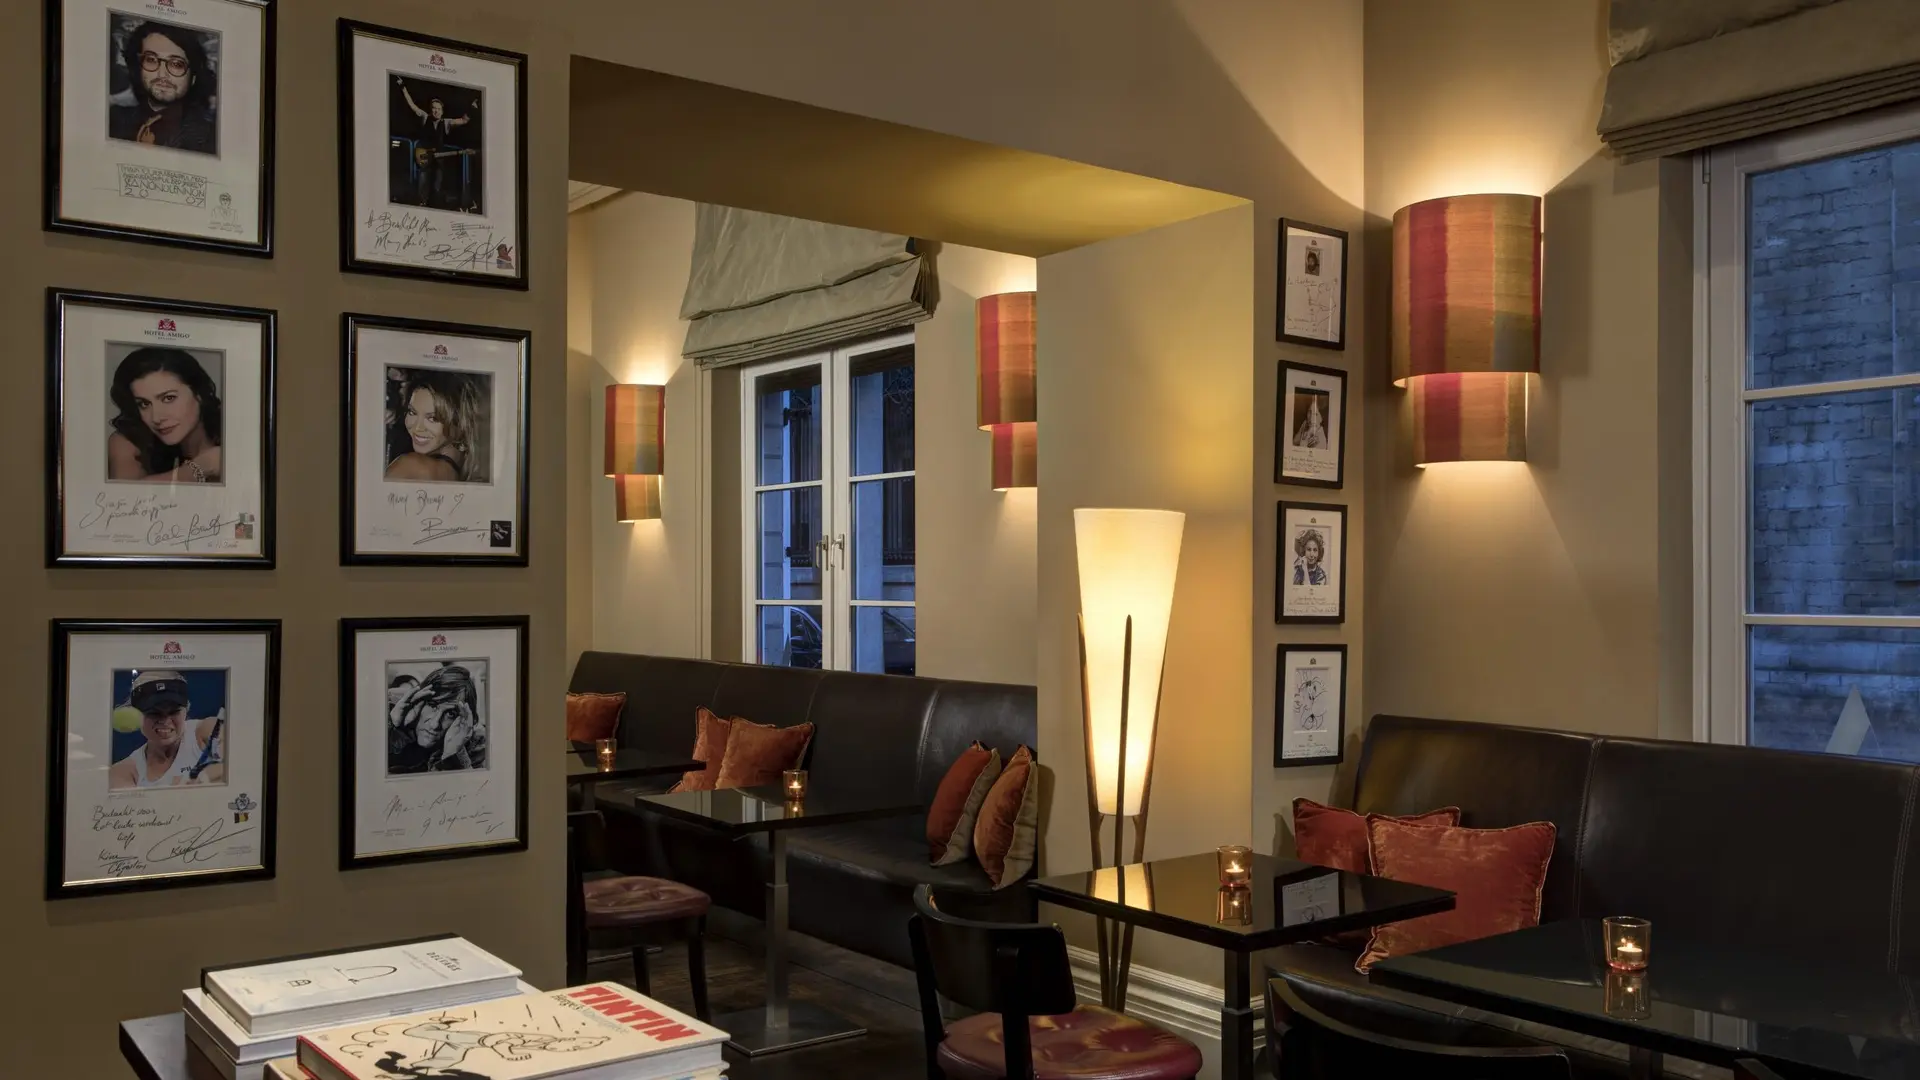 Hotel review Restaurants & Bars' - Rocco Forte Hotel Amigo - 2